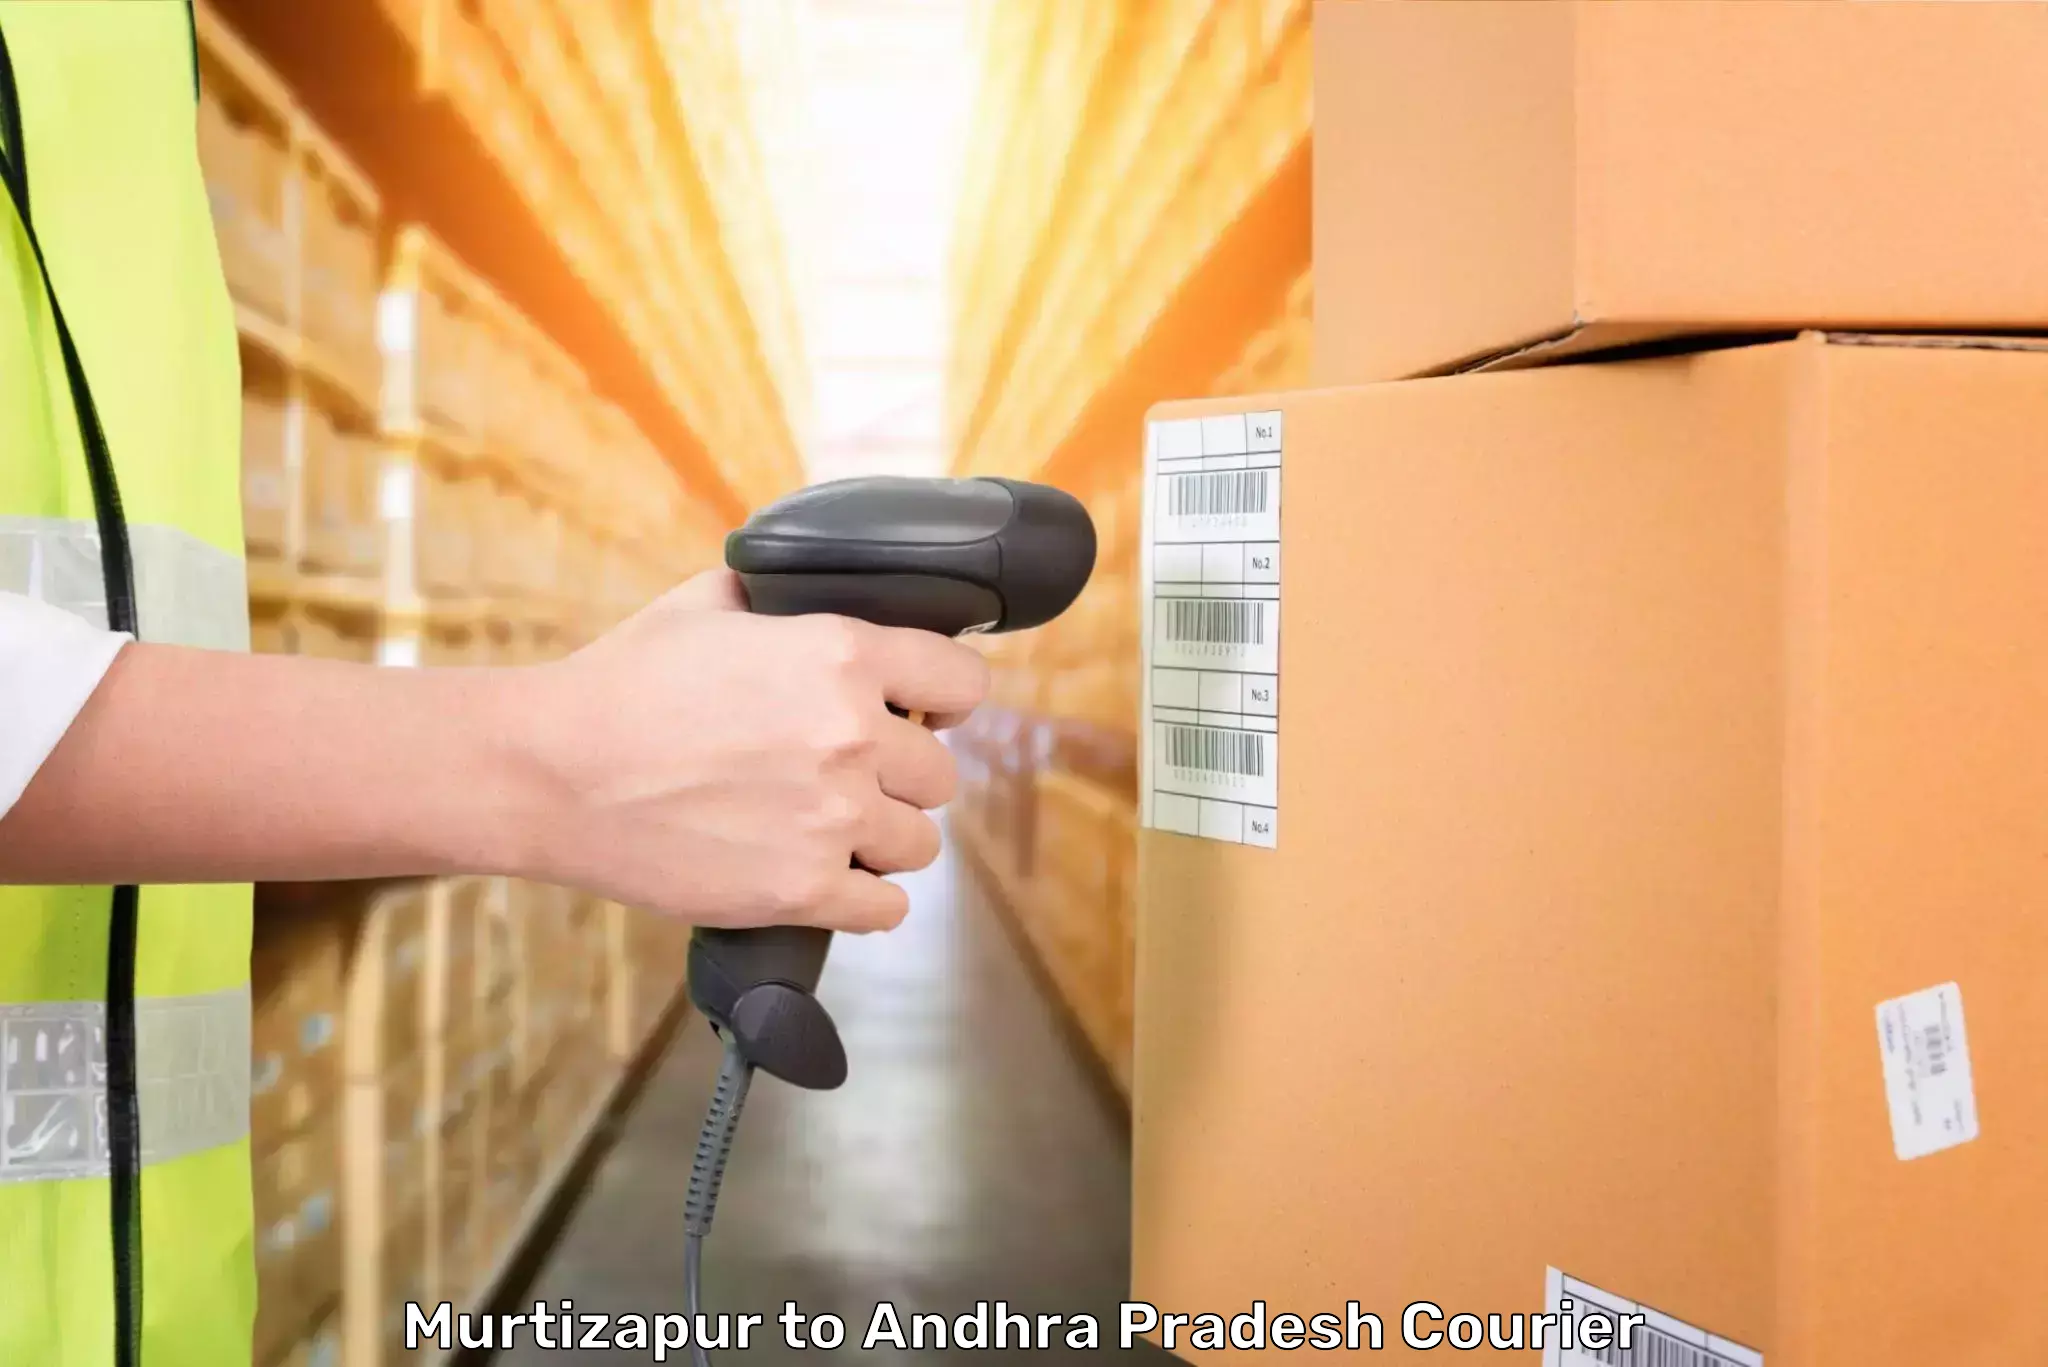 Luggage delivery app Murtizapur to Srungavarapukota SKota